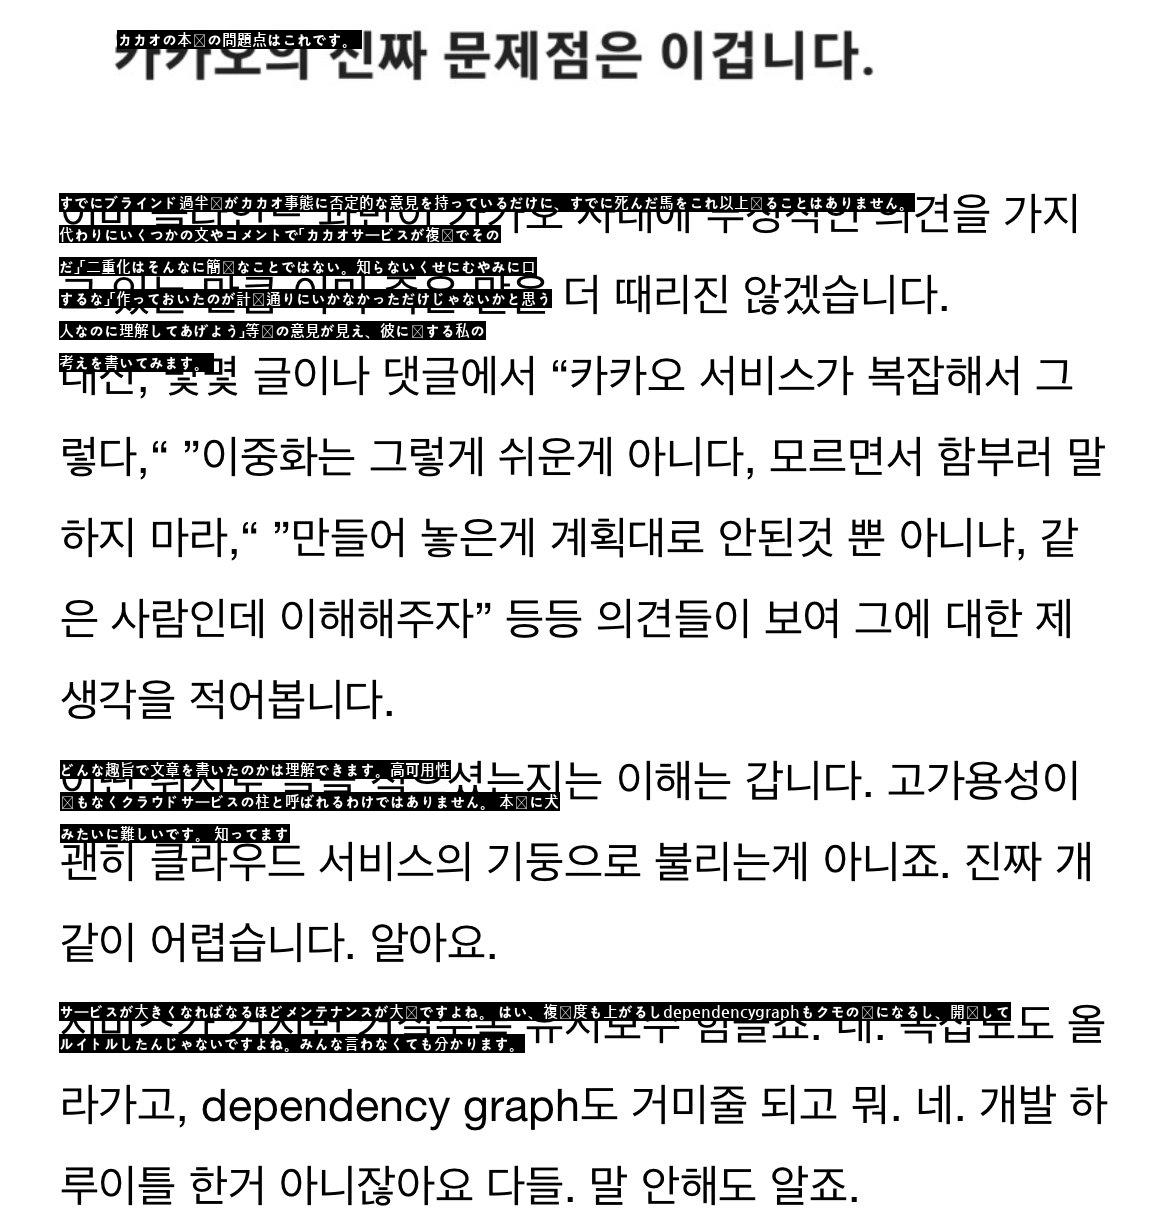 韓国オラクル職員の今回の事態に対する一針